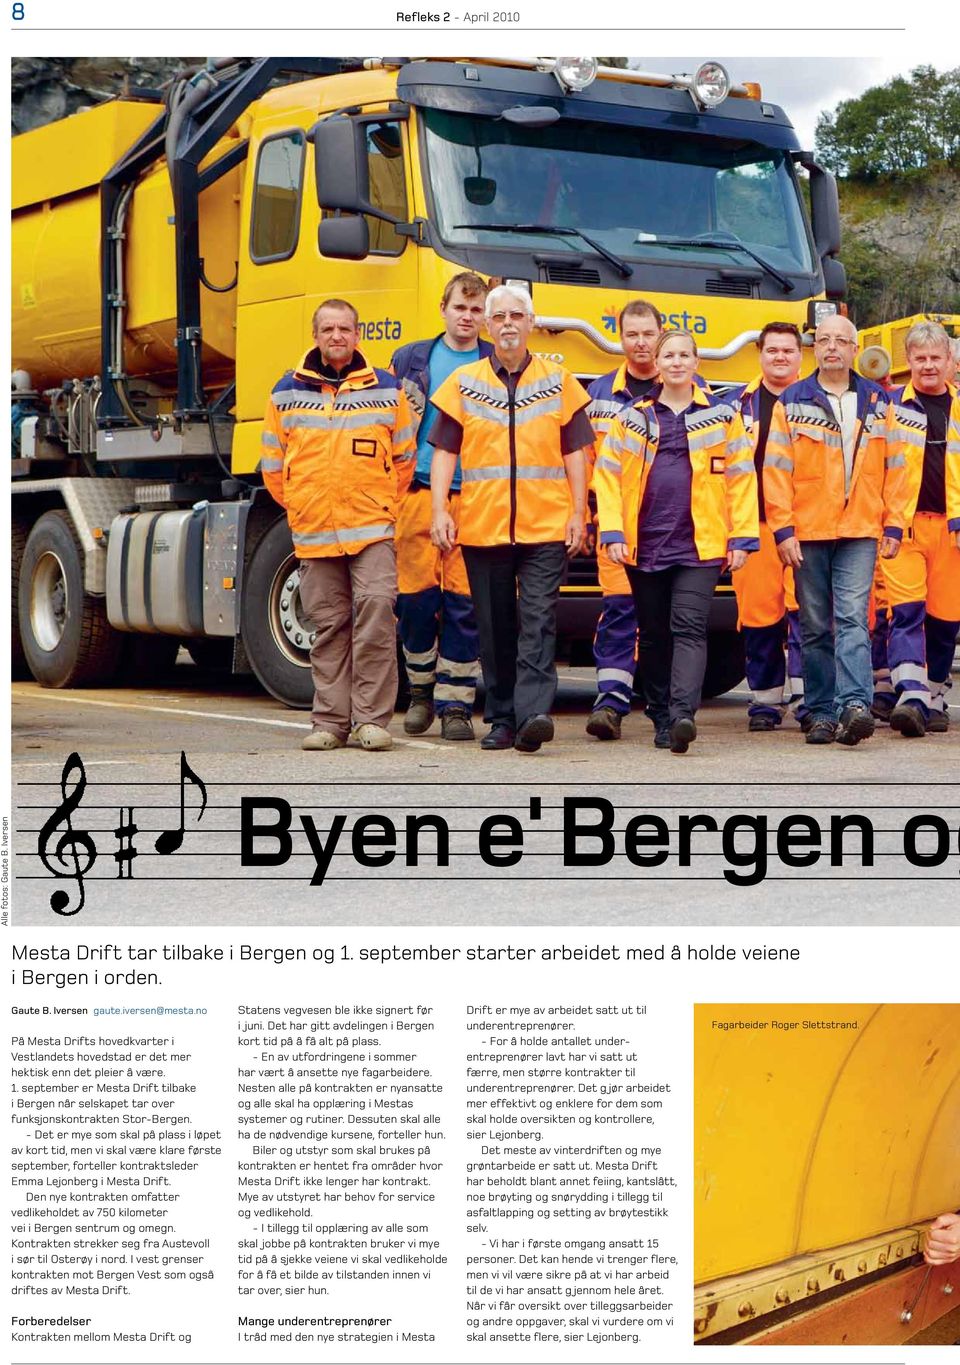 september er Mesta Drift tilbake i Bergen når selskapet tar over funksjonskontrakten Stor-Bergen.